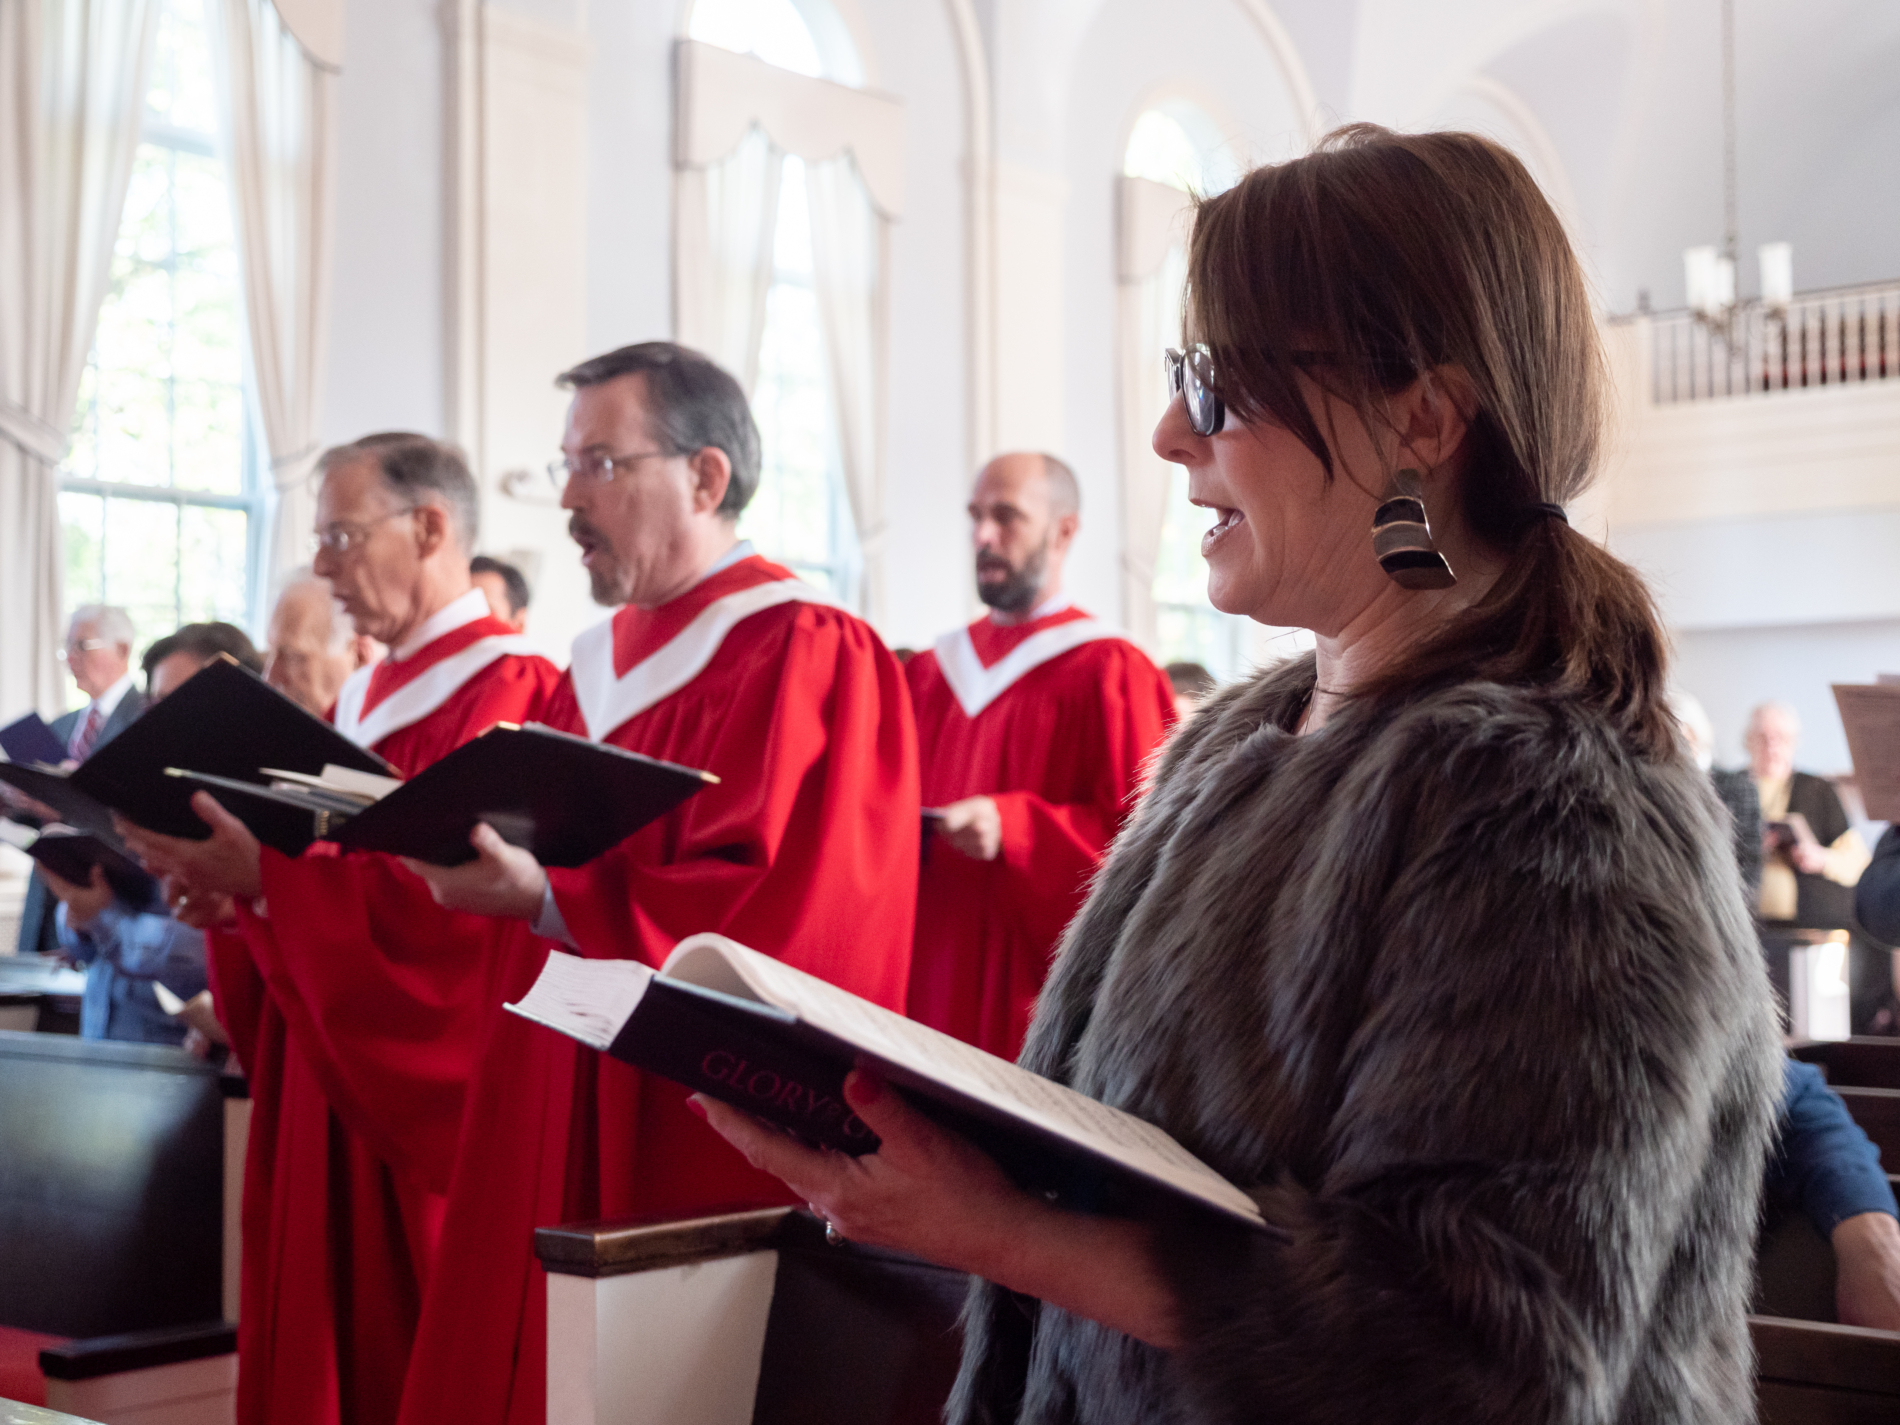 Choir members singing in red robes